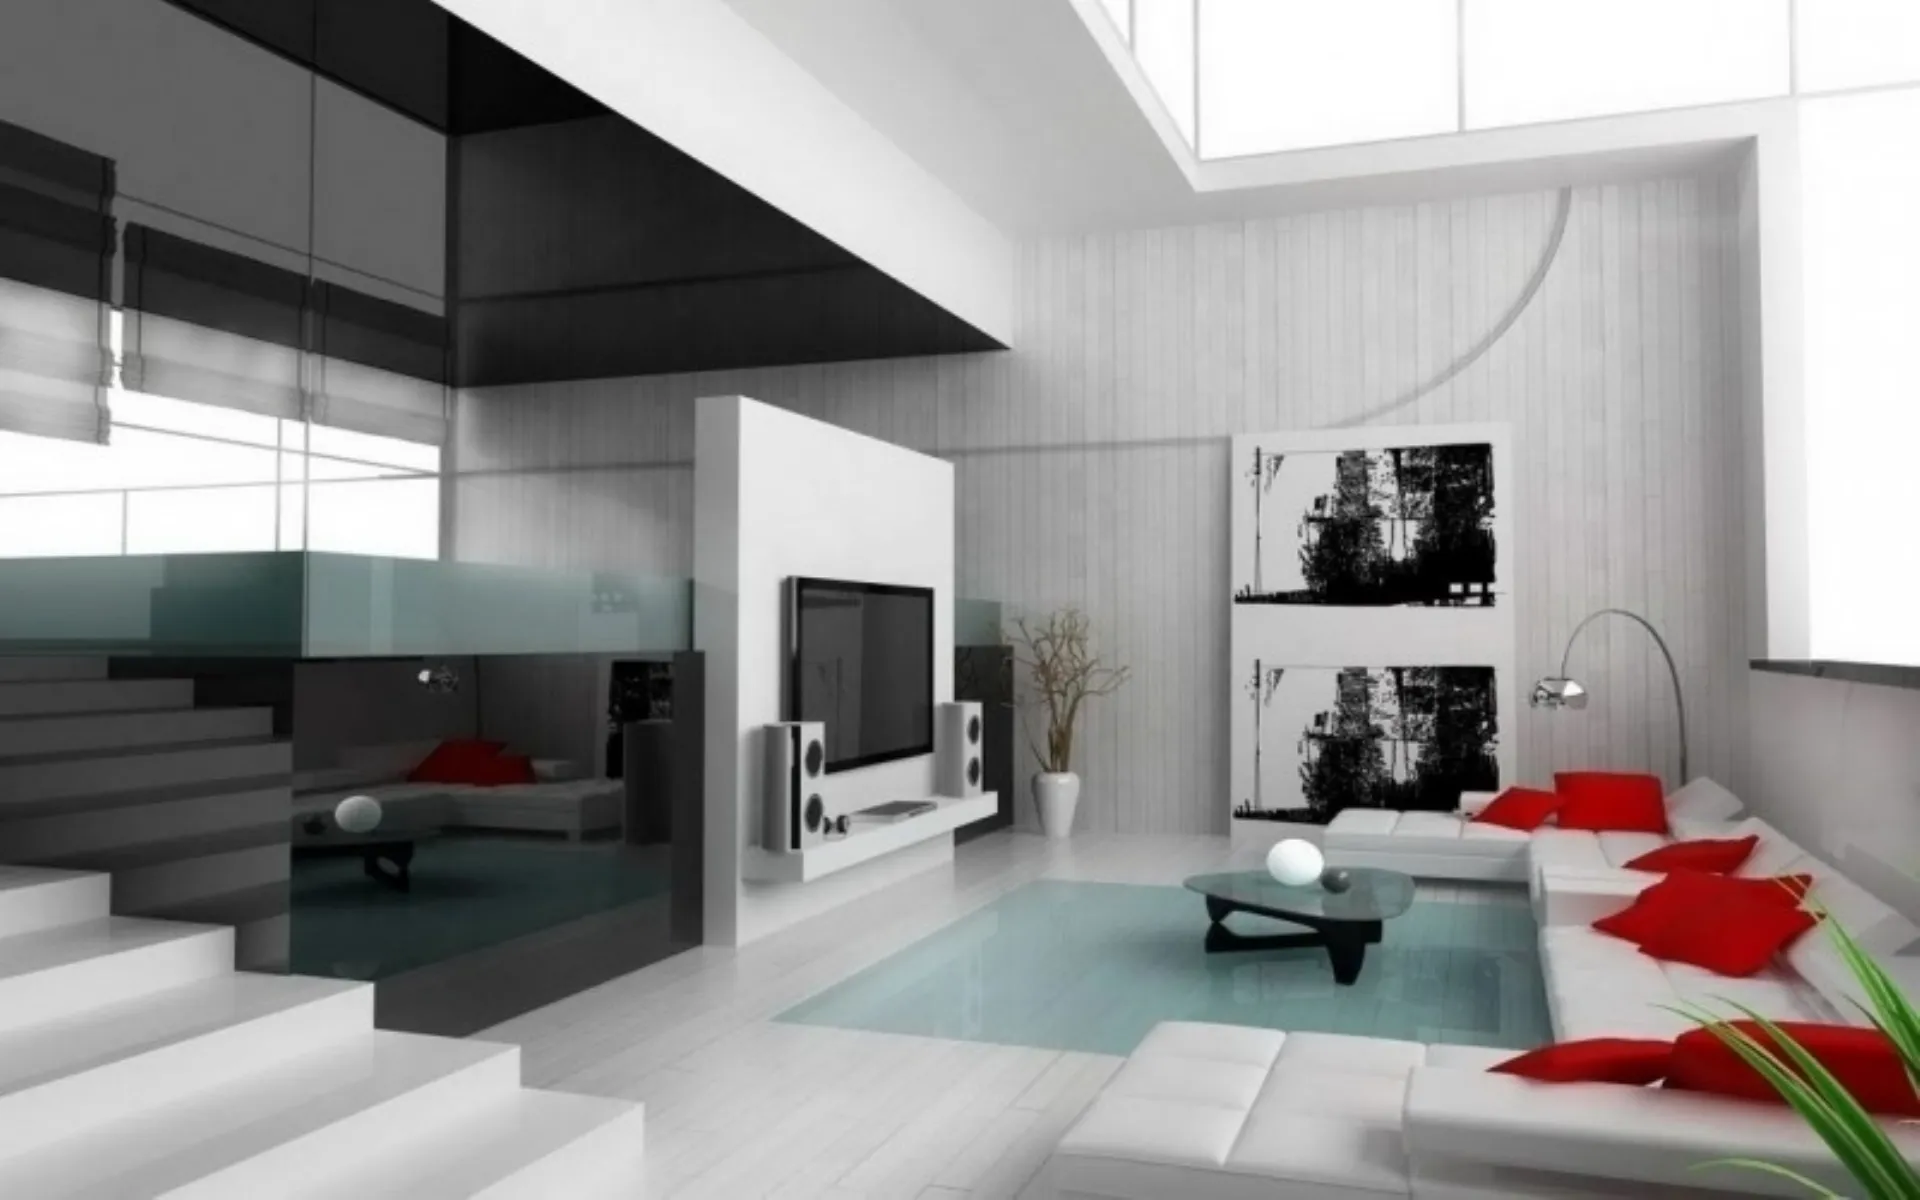 Design semplice, pulito, colori moderni. Mobile #soggiorno